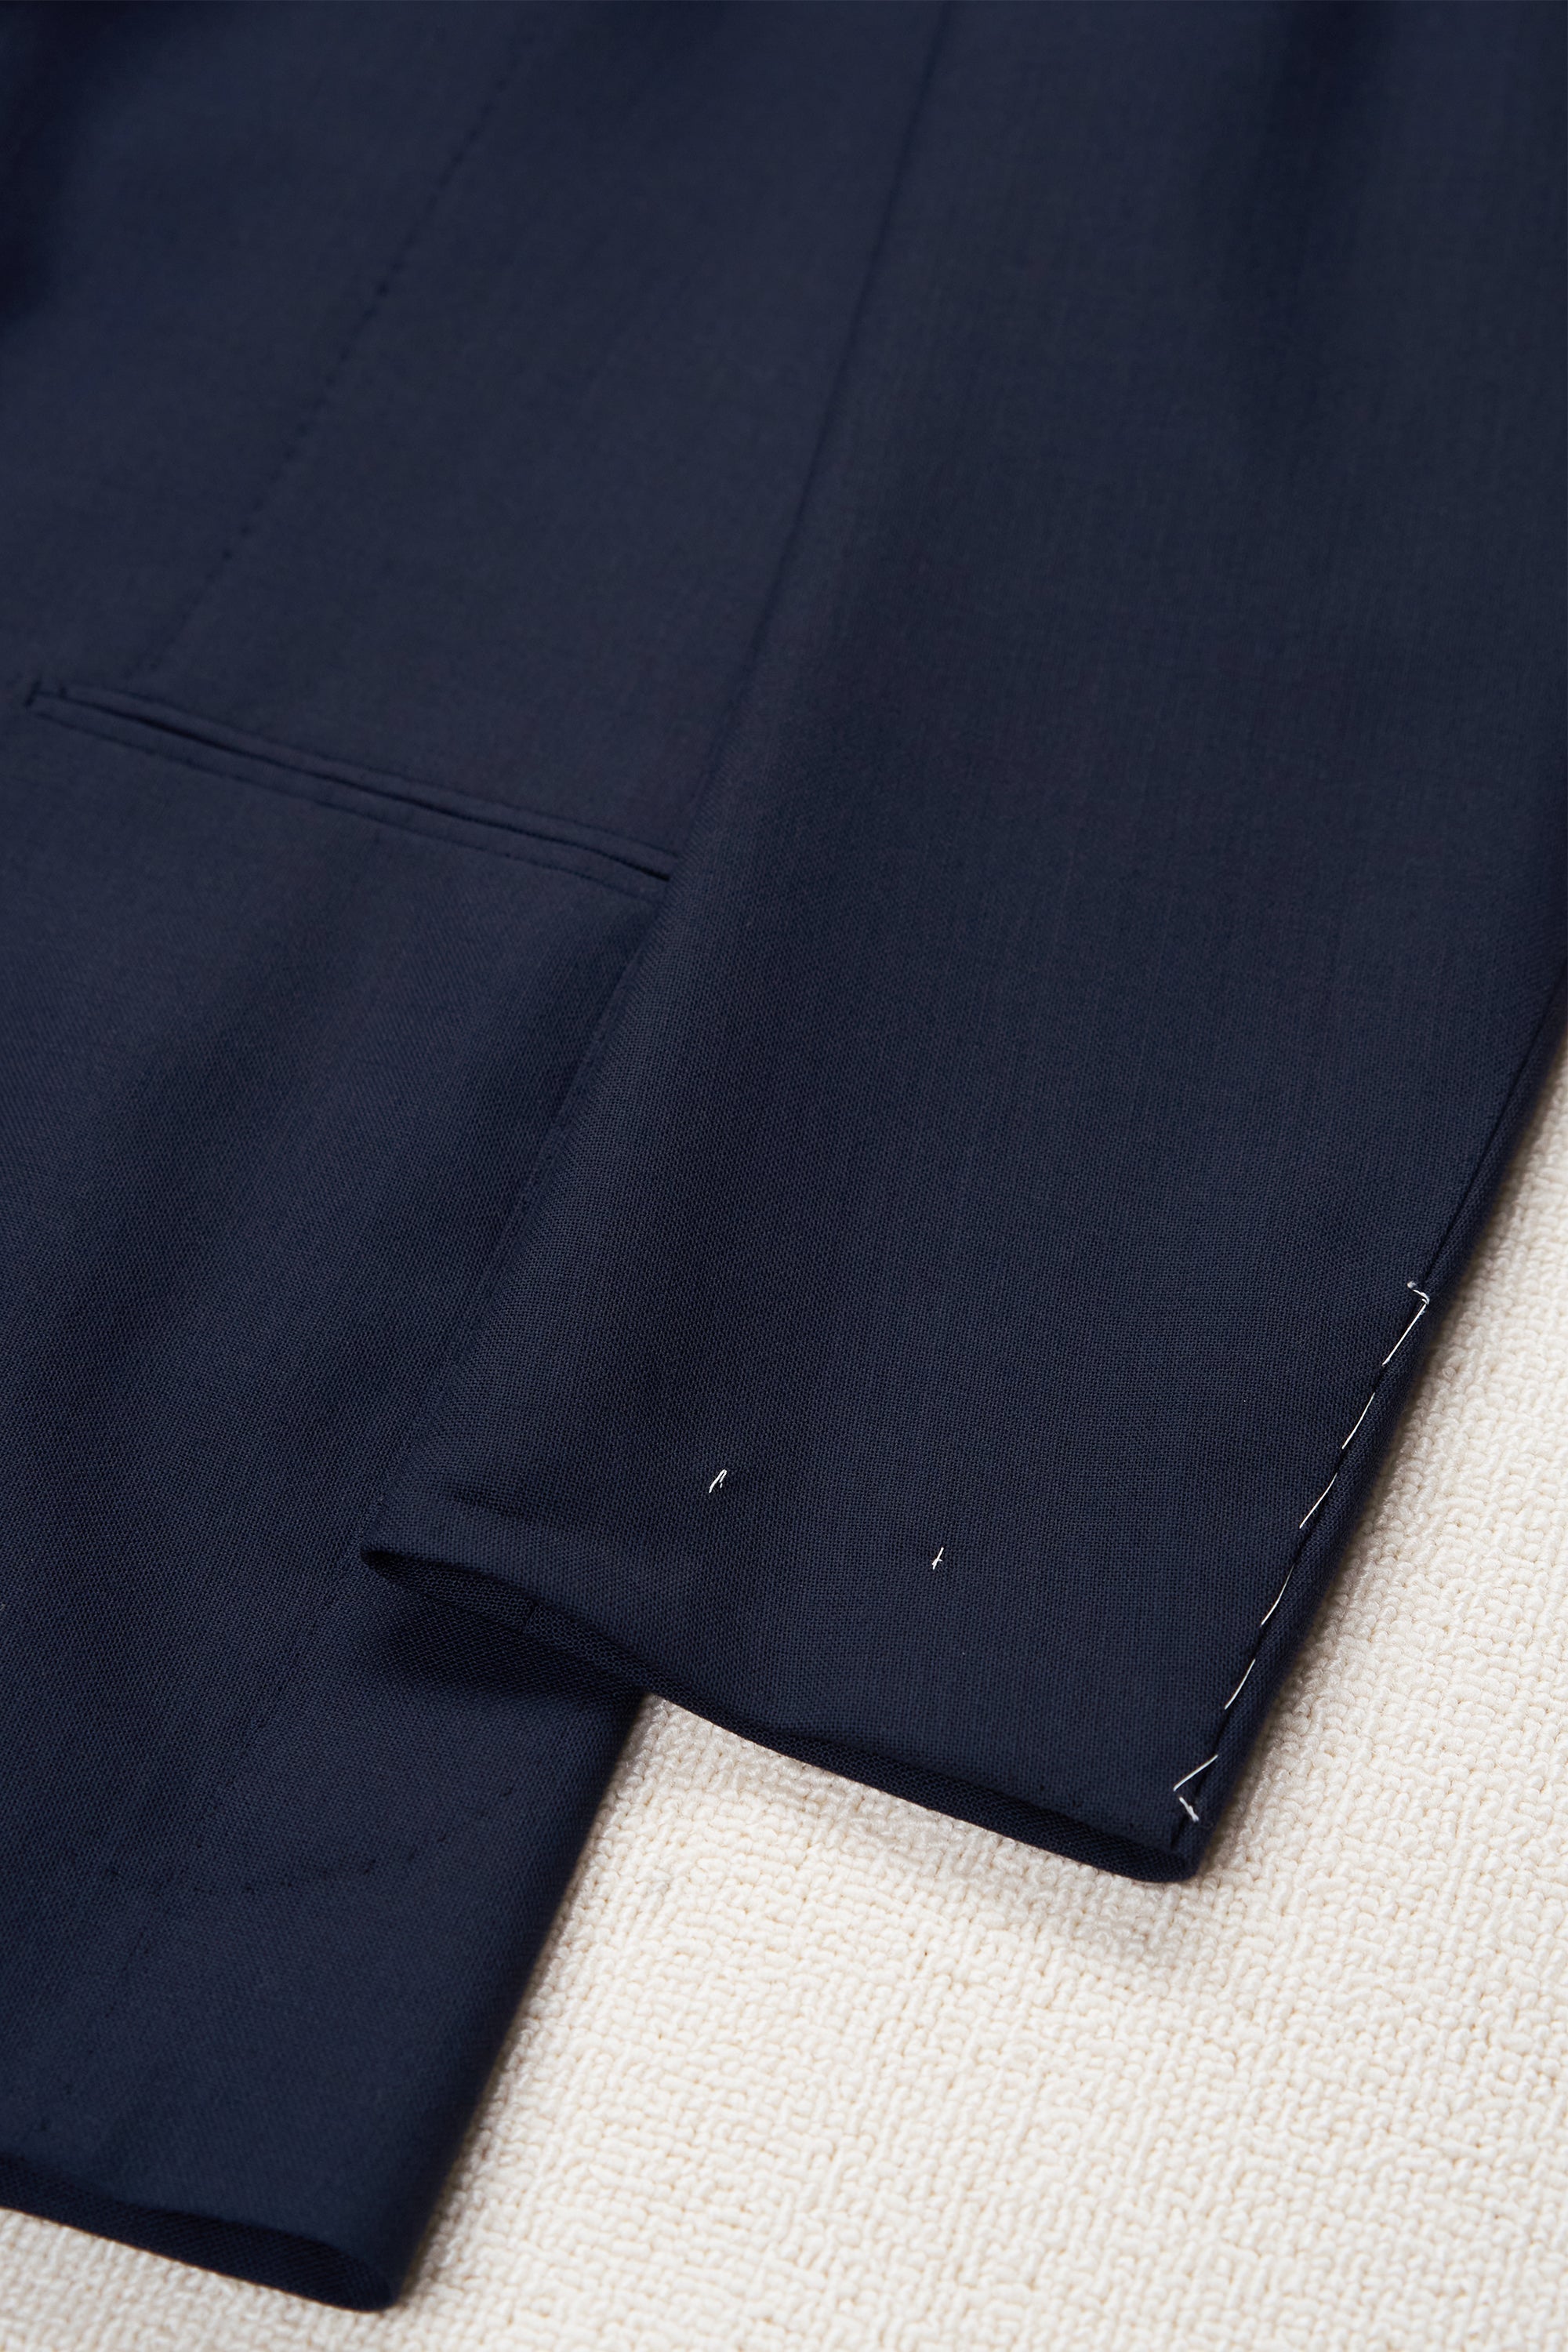 Orazio Luciano Navy Fresco Wool Suit Bespoke – Drop 93